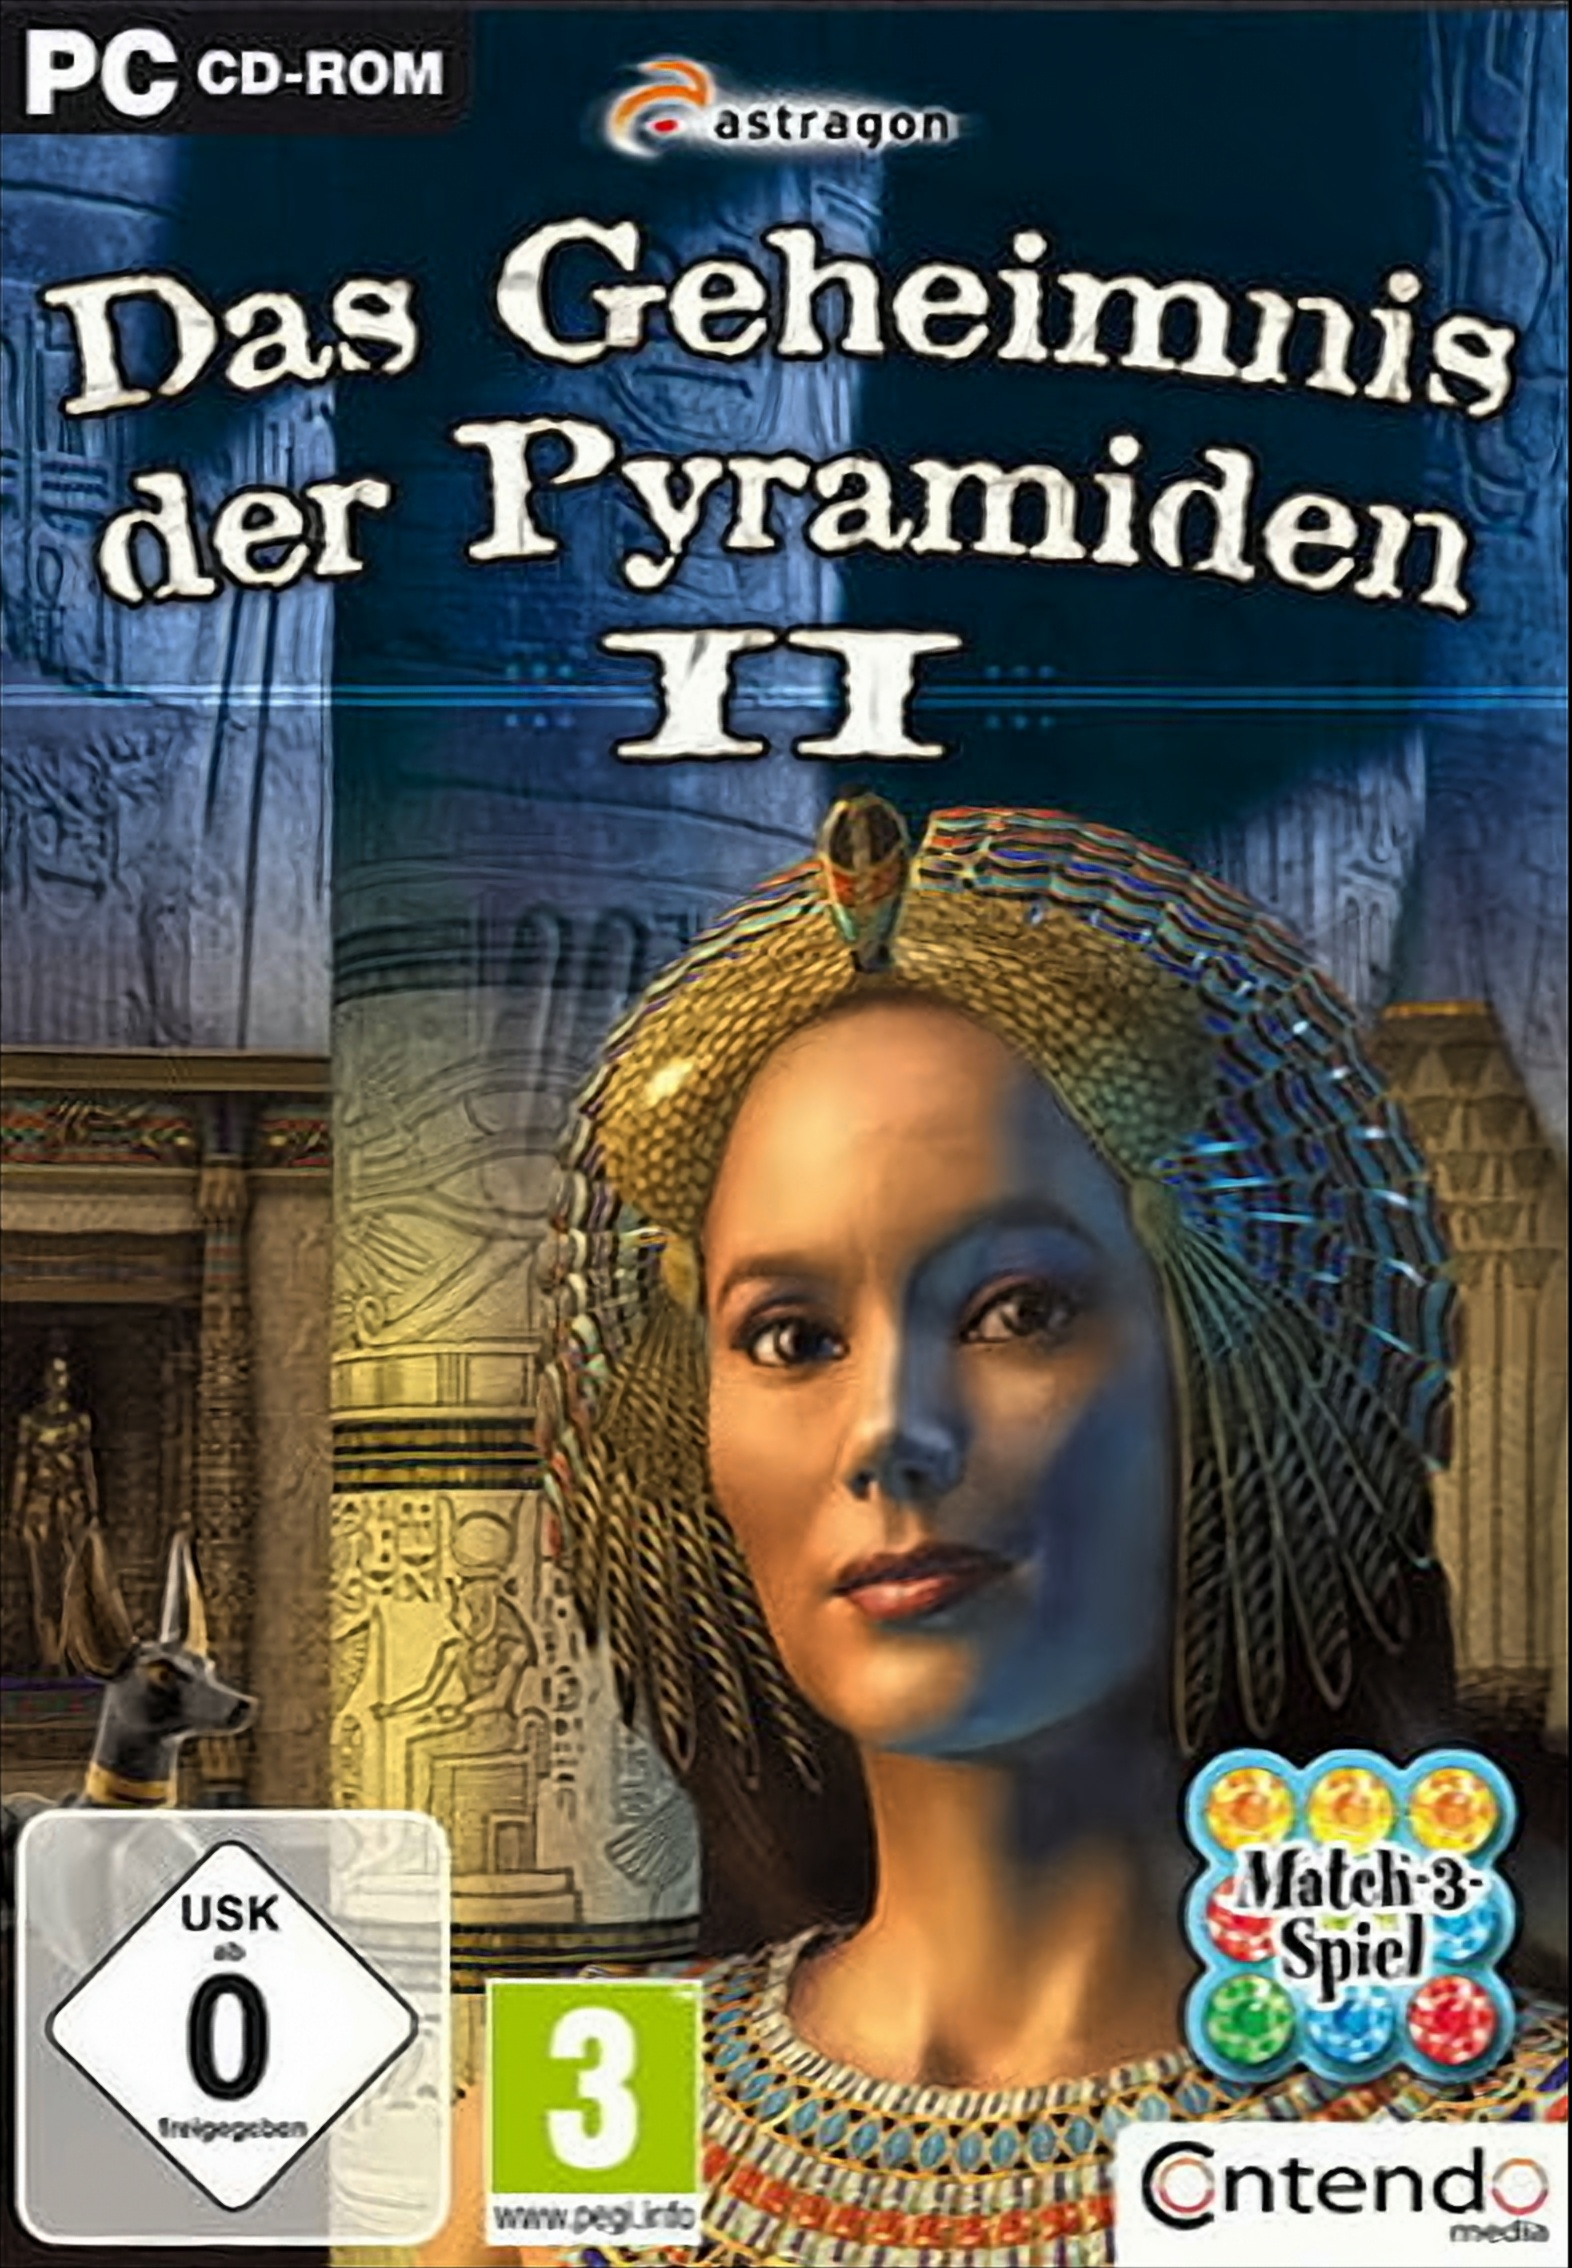 Das Pyramiden [PC] Geheimnis II - der